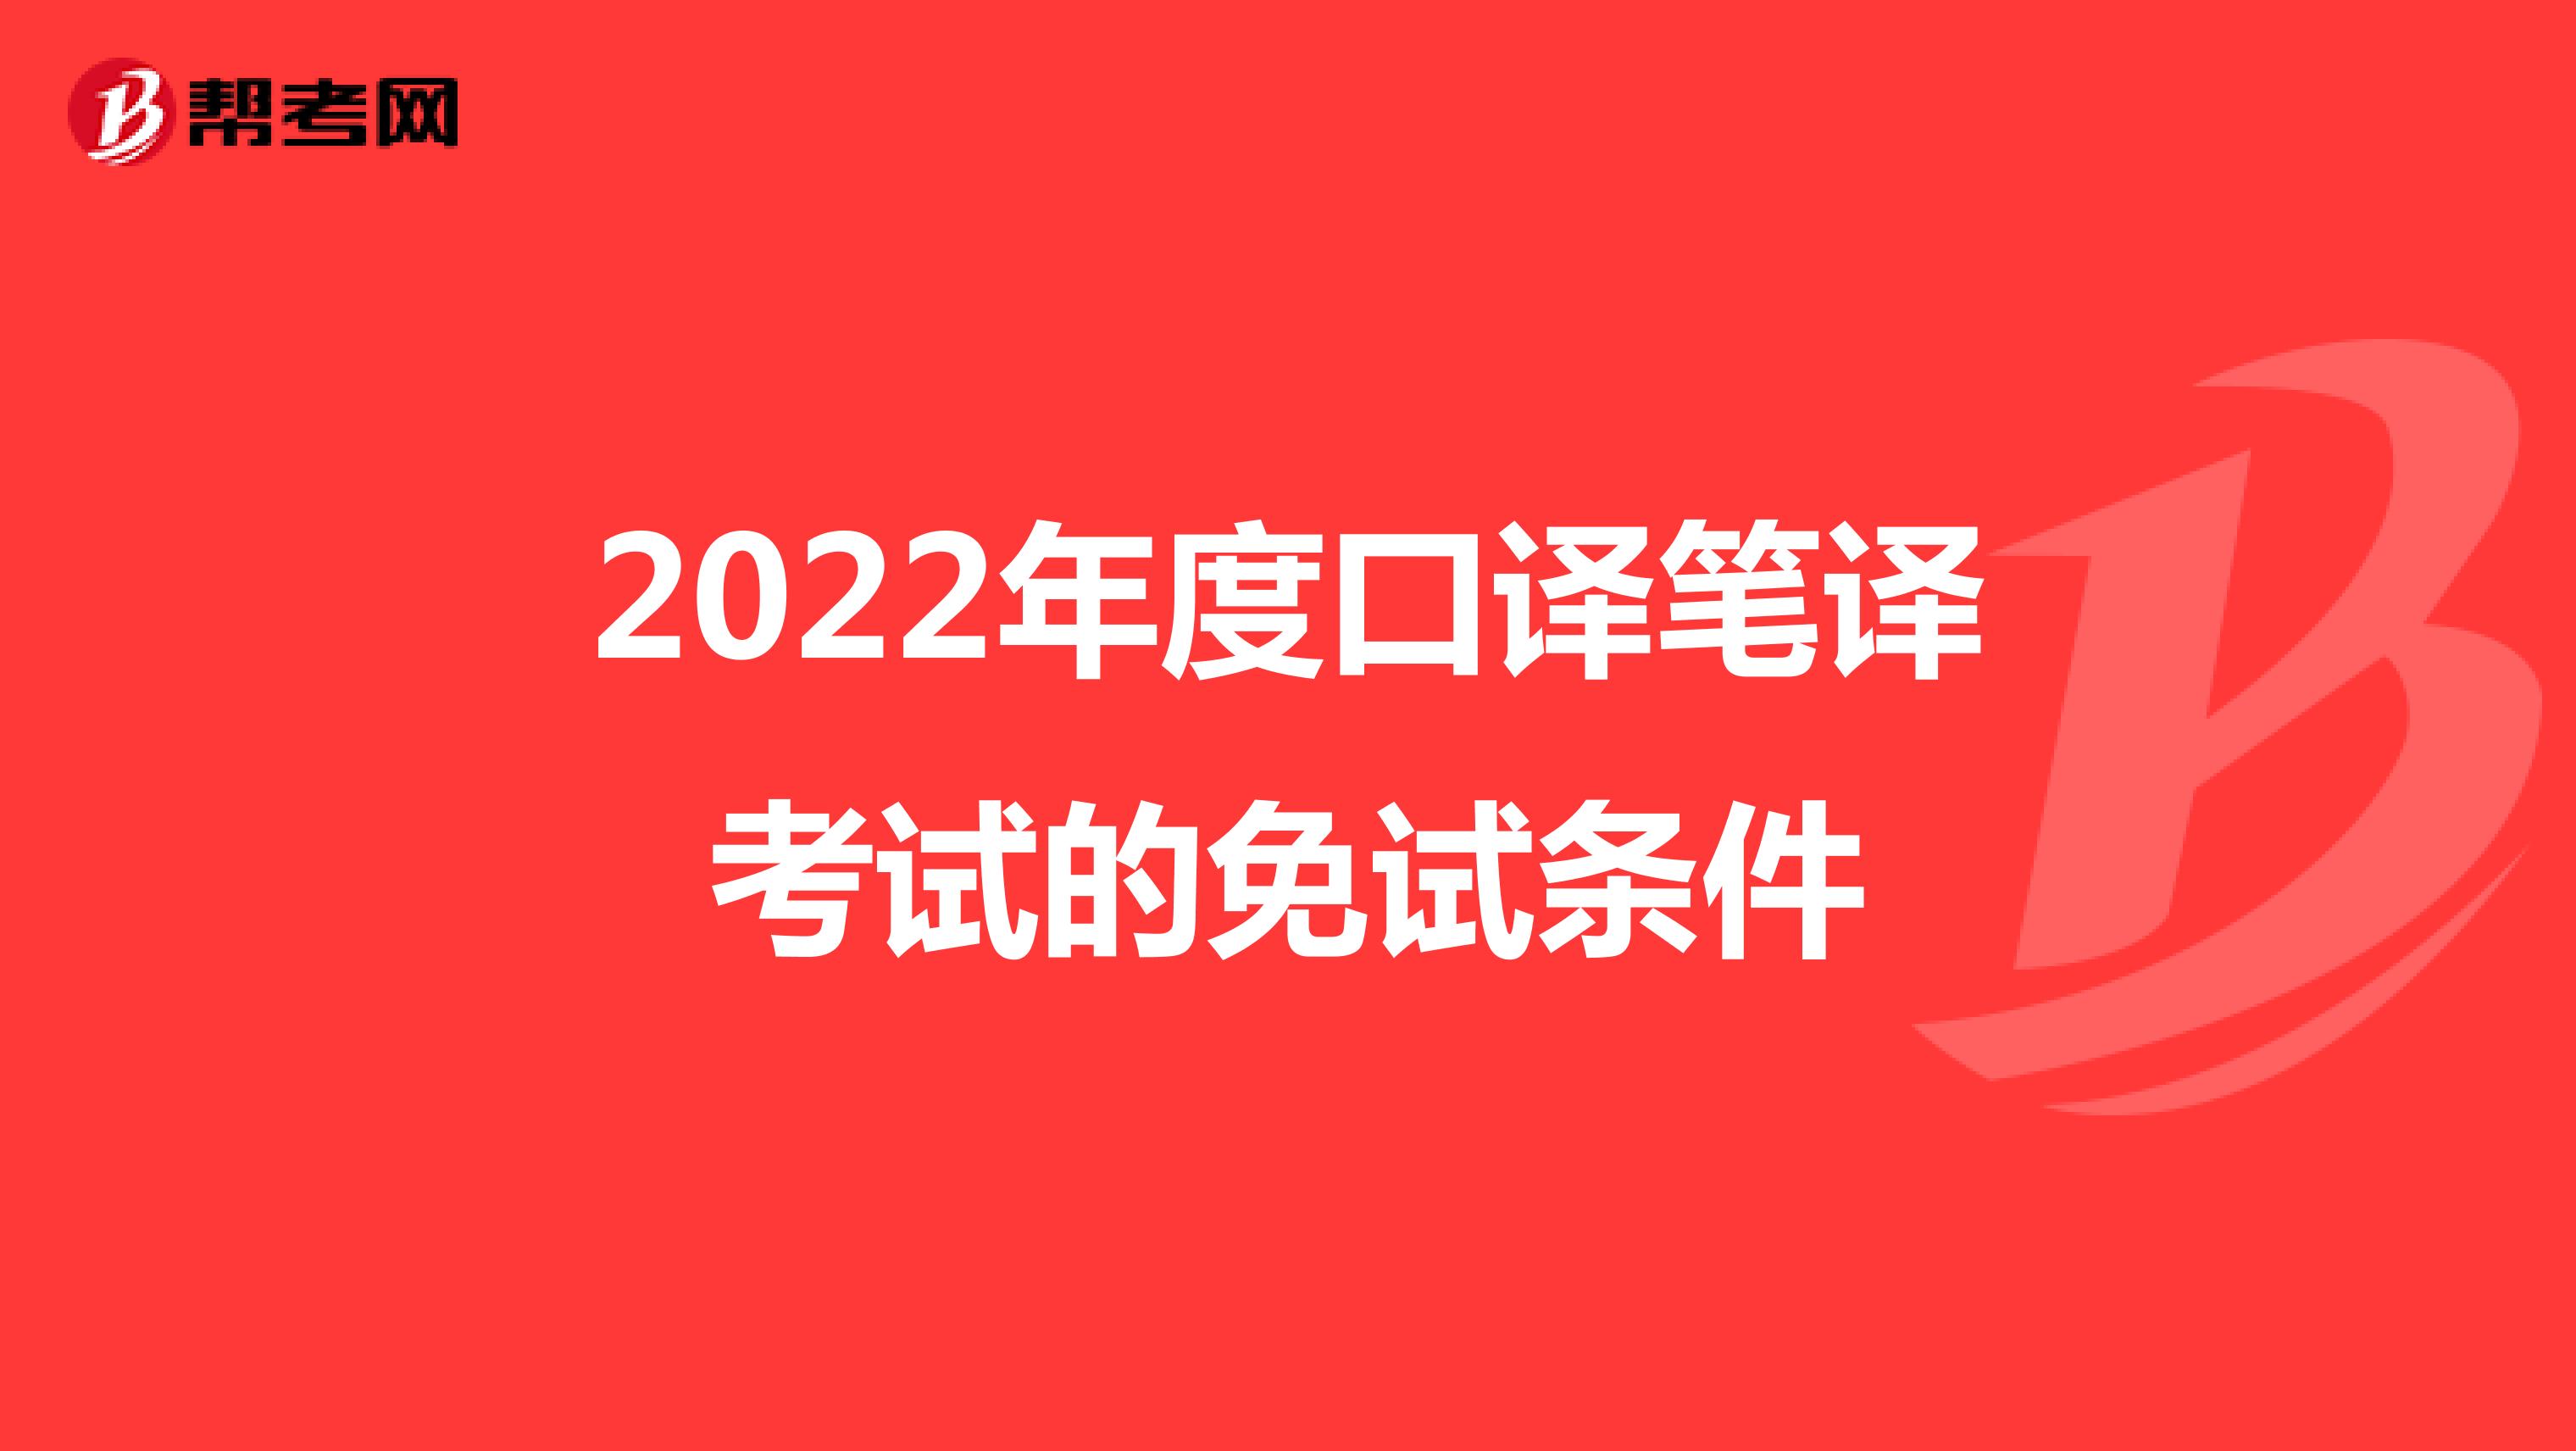 2022年度口译笔译考试的免试条件